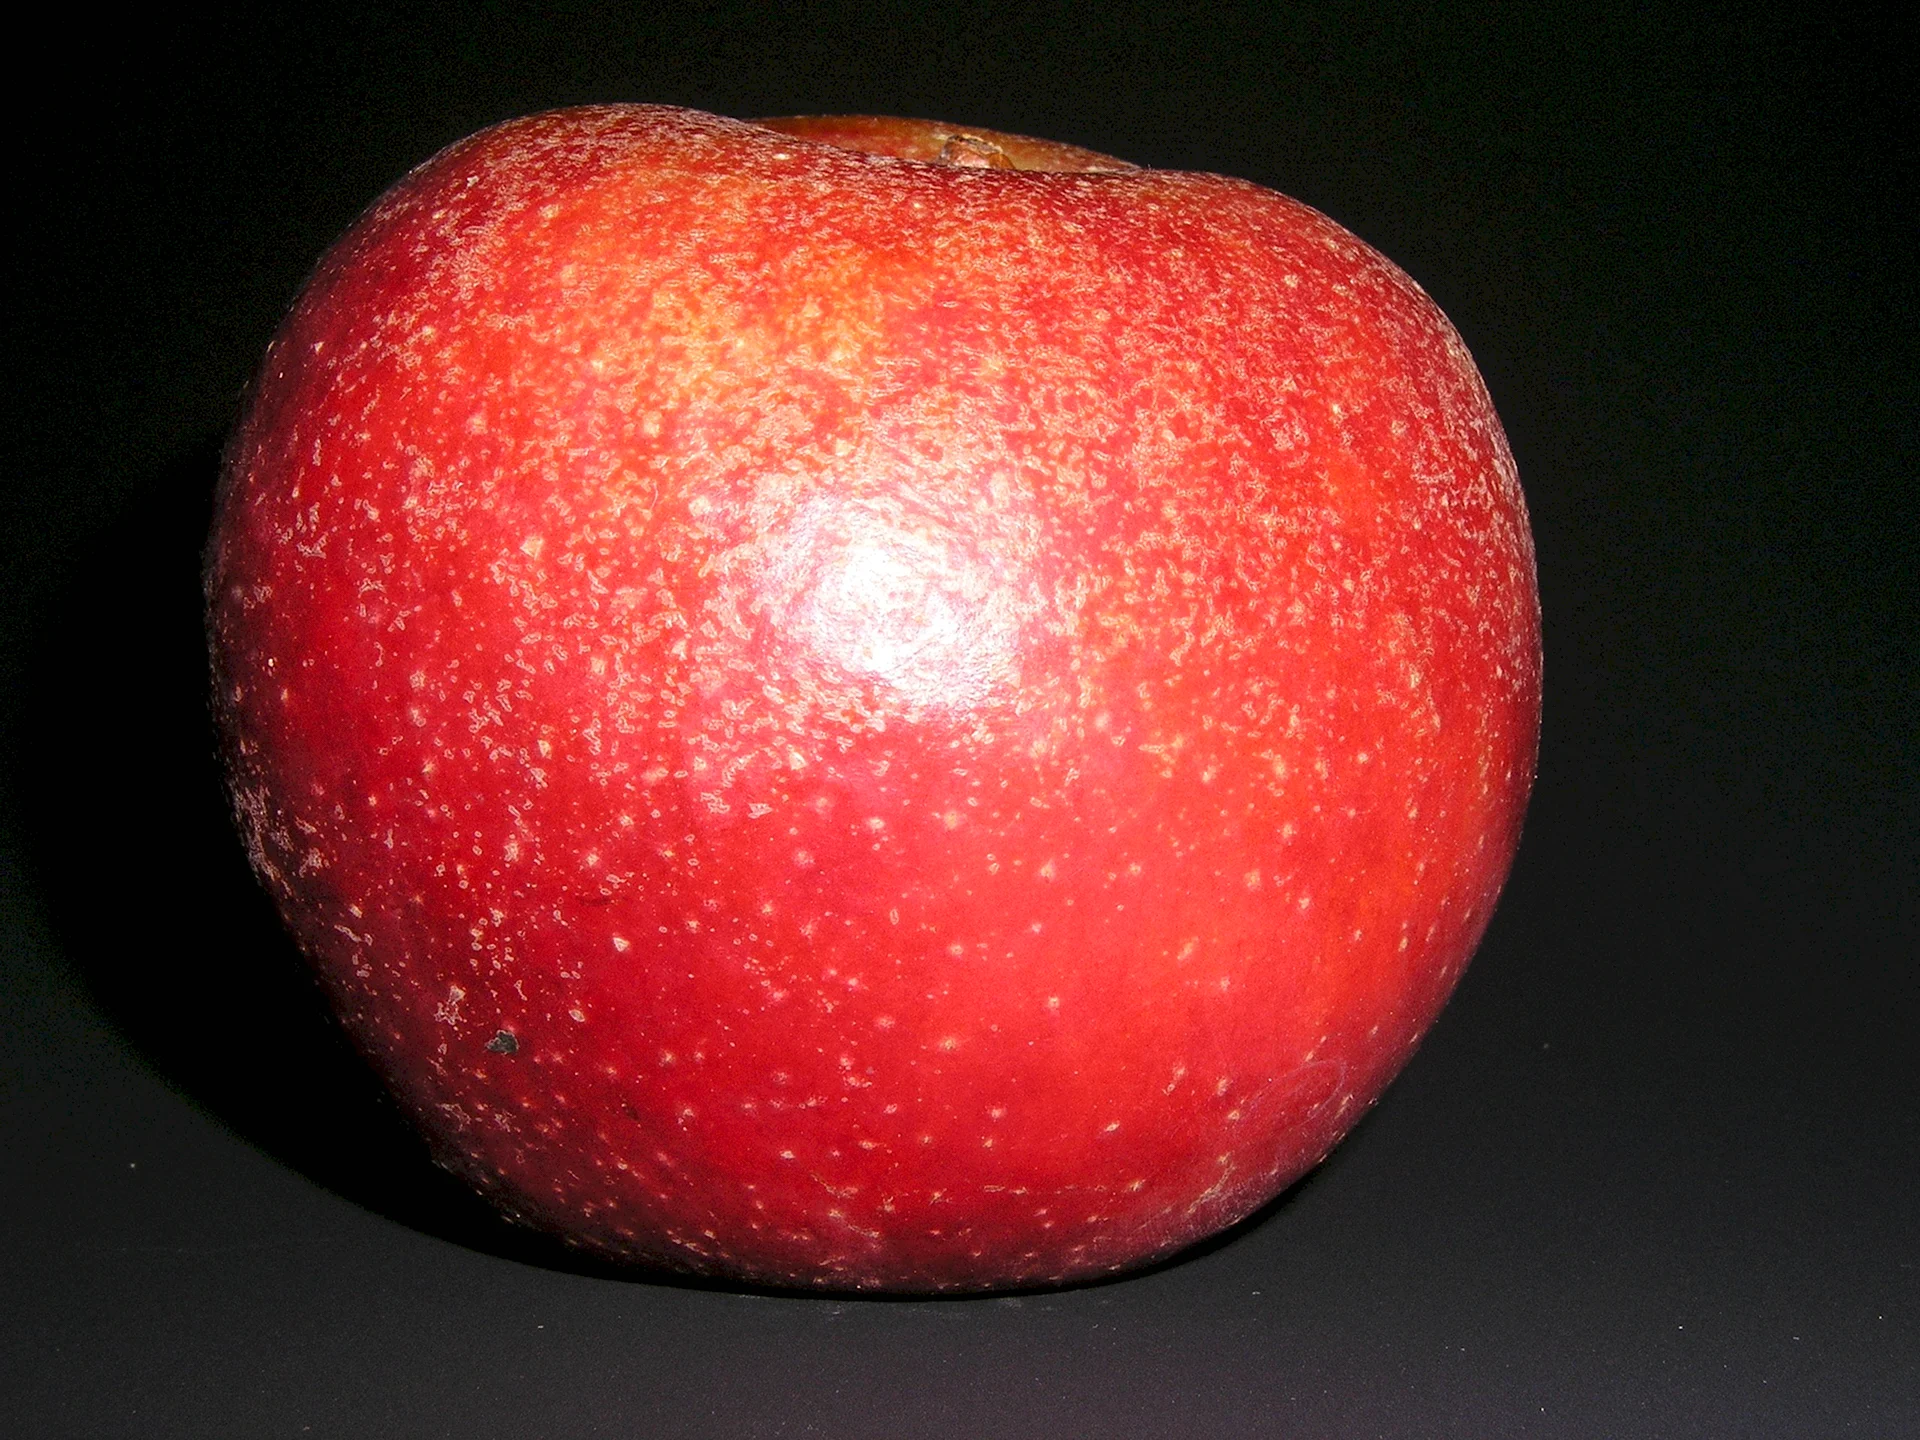 Текстура яблока